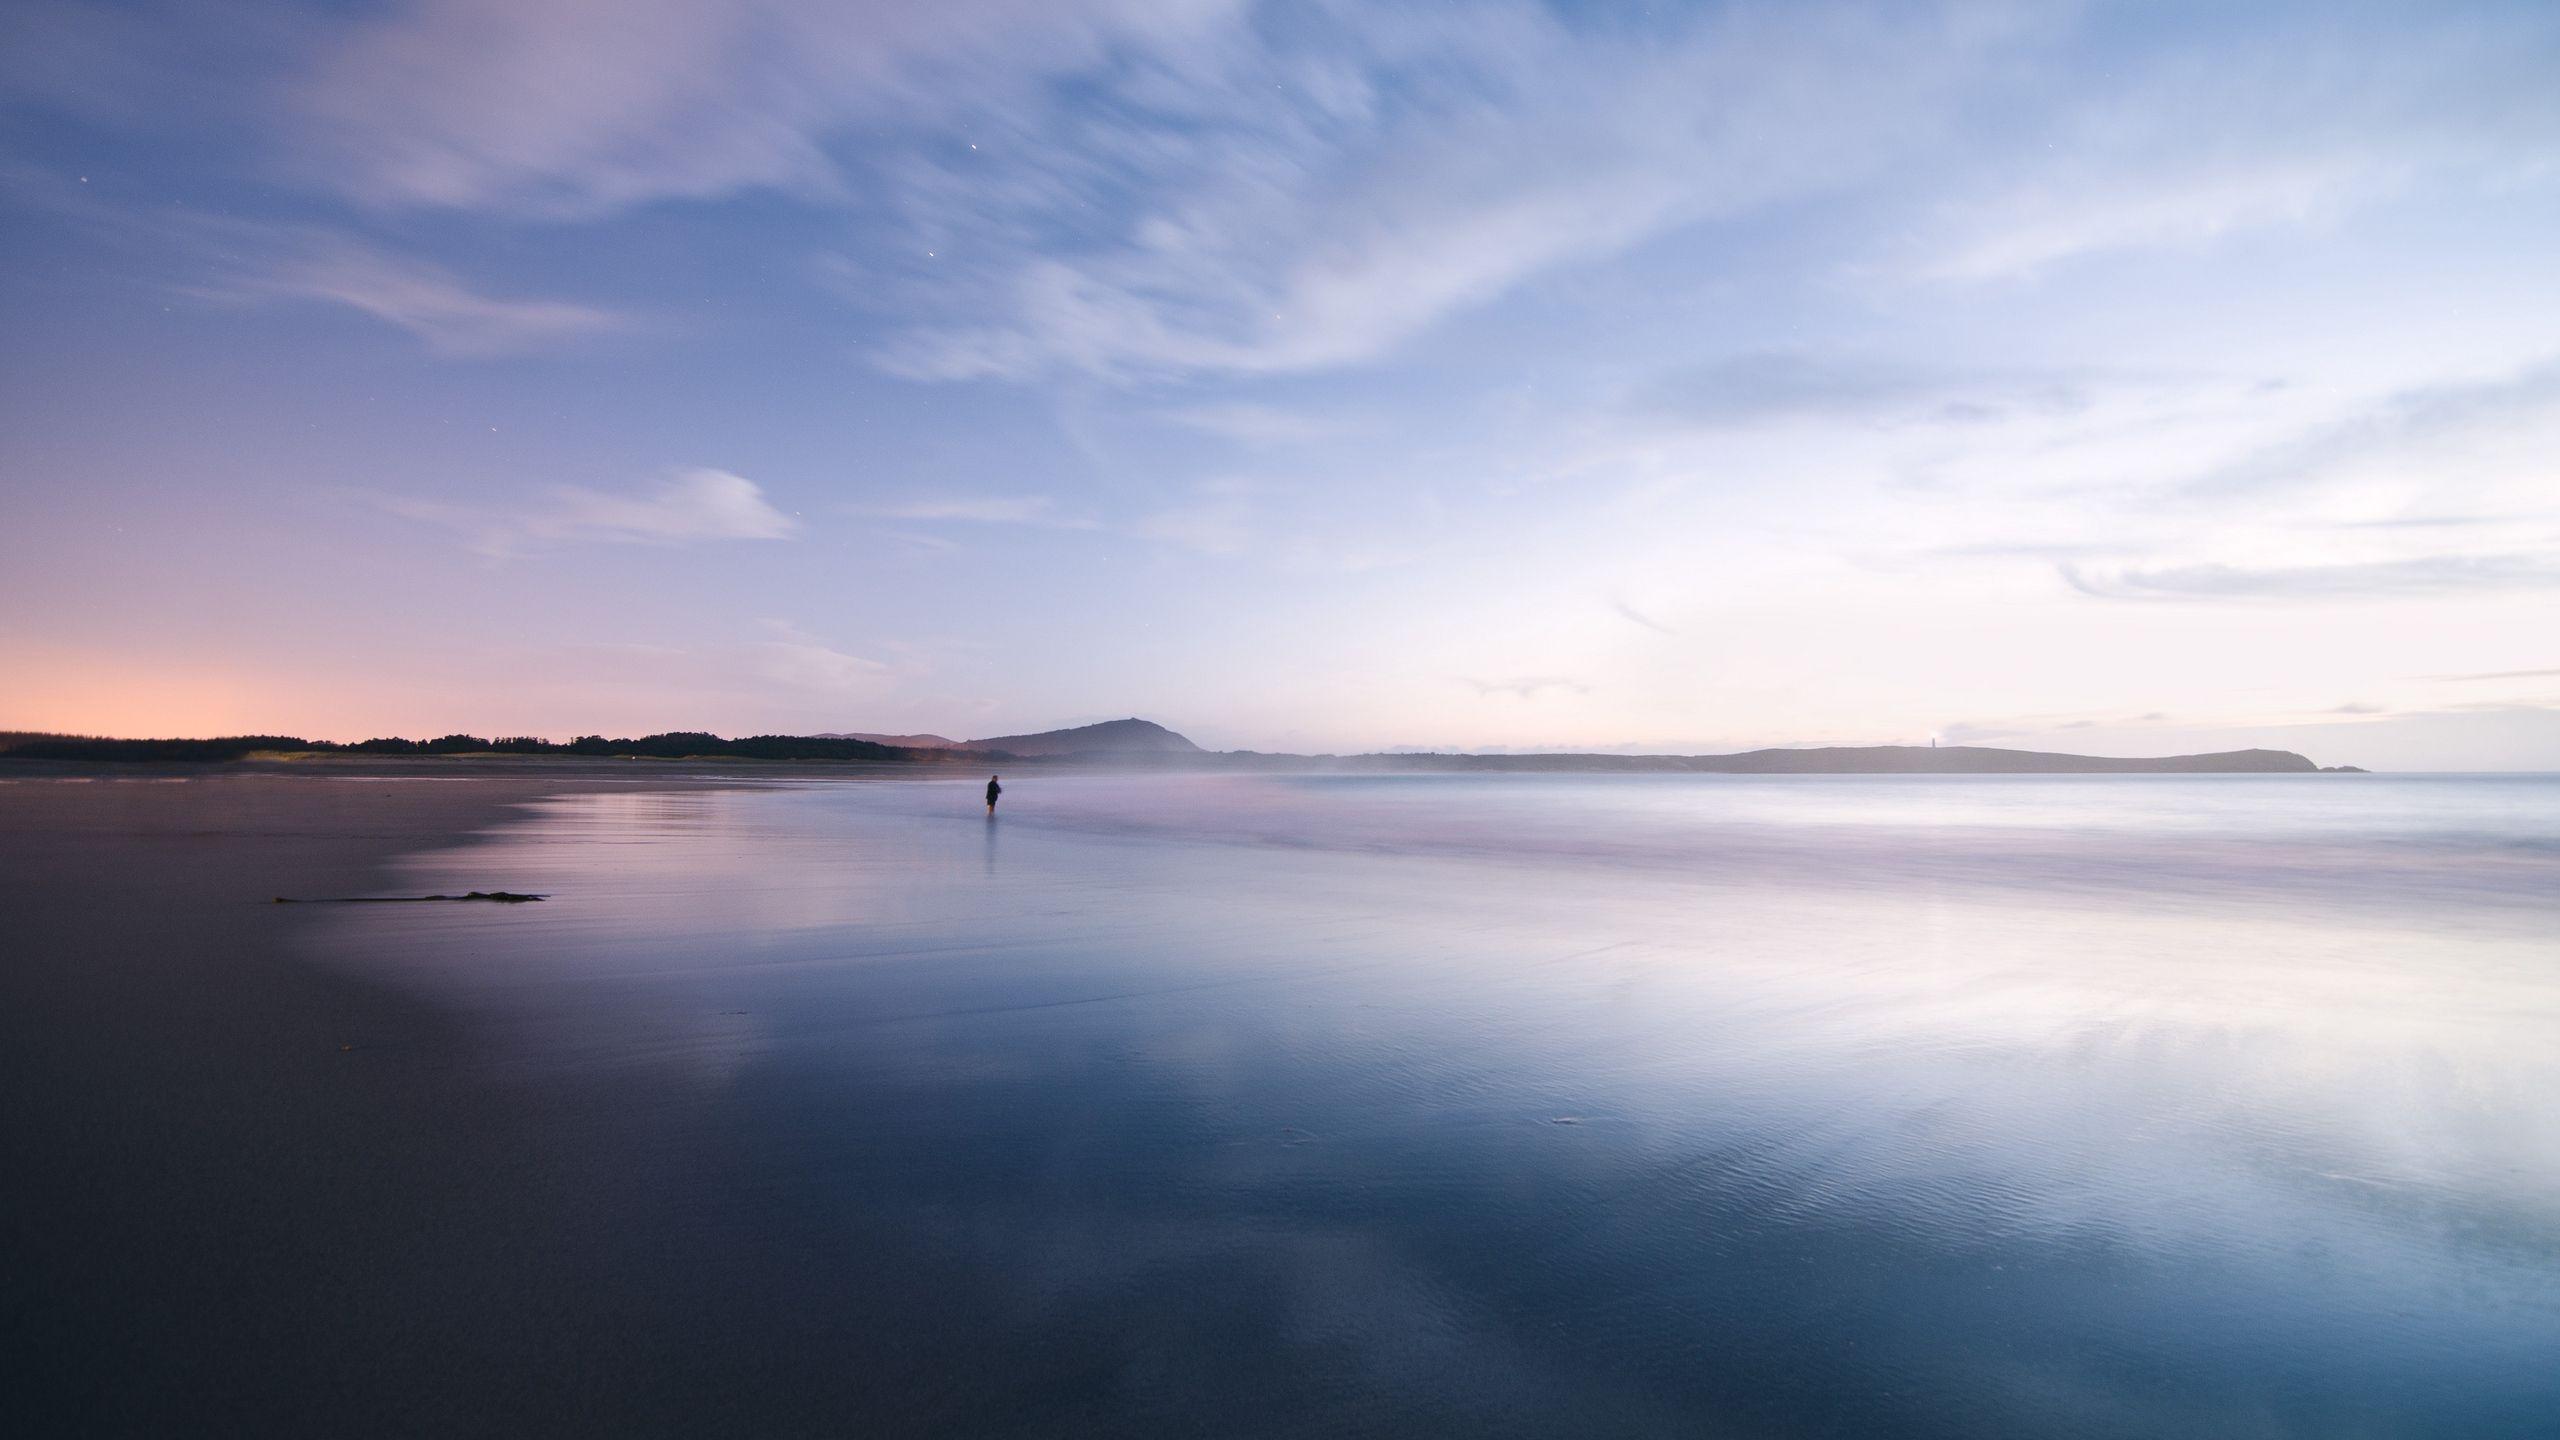 Download wallpaper 2560x1440 coast, ocean, loneliness, horizon